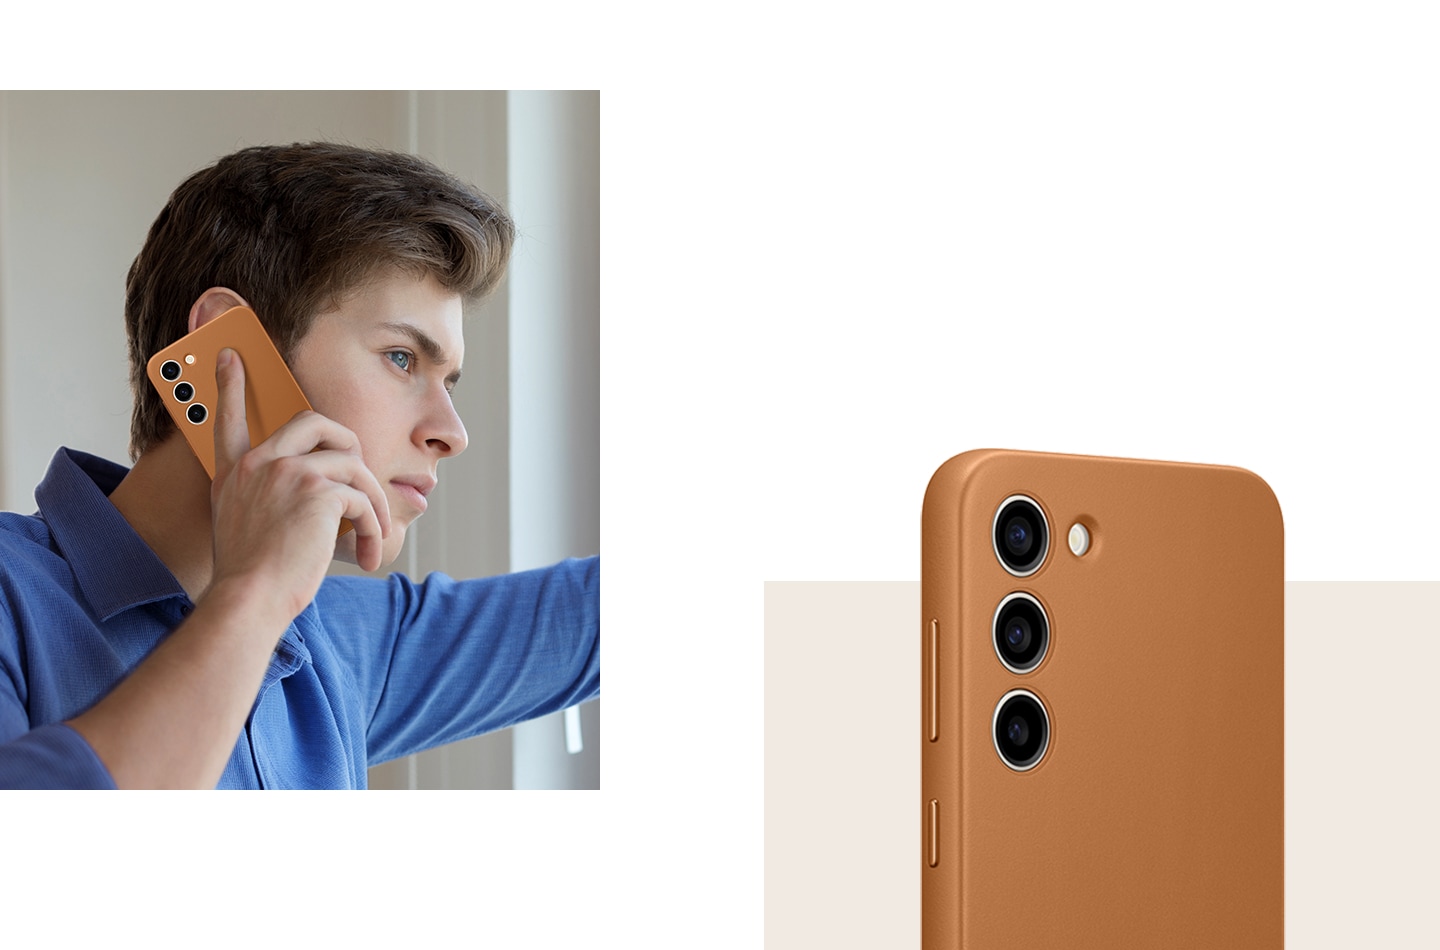 Muškarac udobno drži Galaxy S23+ telefon sa postavljenom kožnom futrolom blizu svog lica. Pored toga vidi se krupan kadar zadnje strane telefonske futrole.